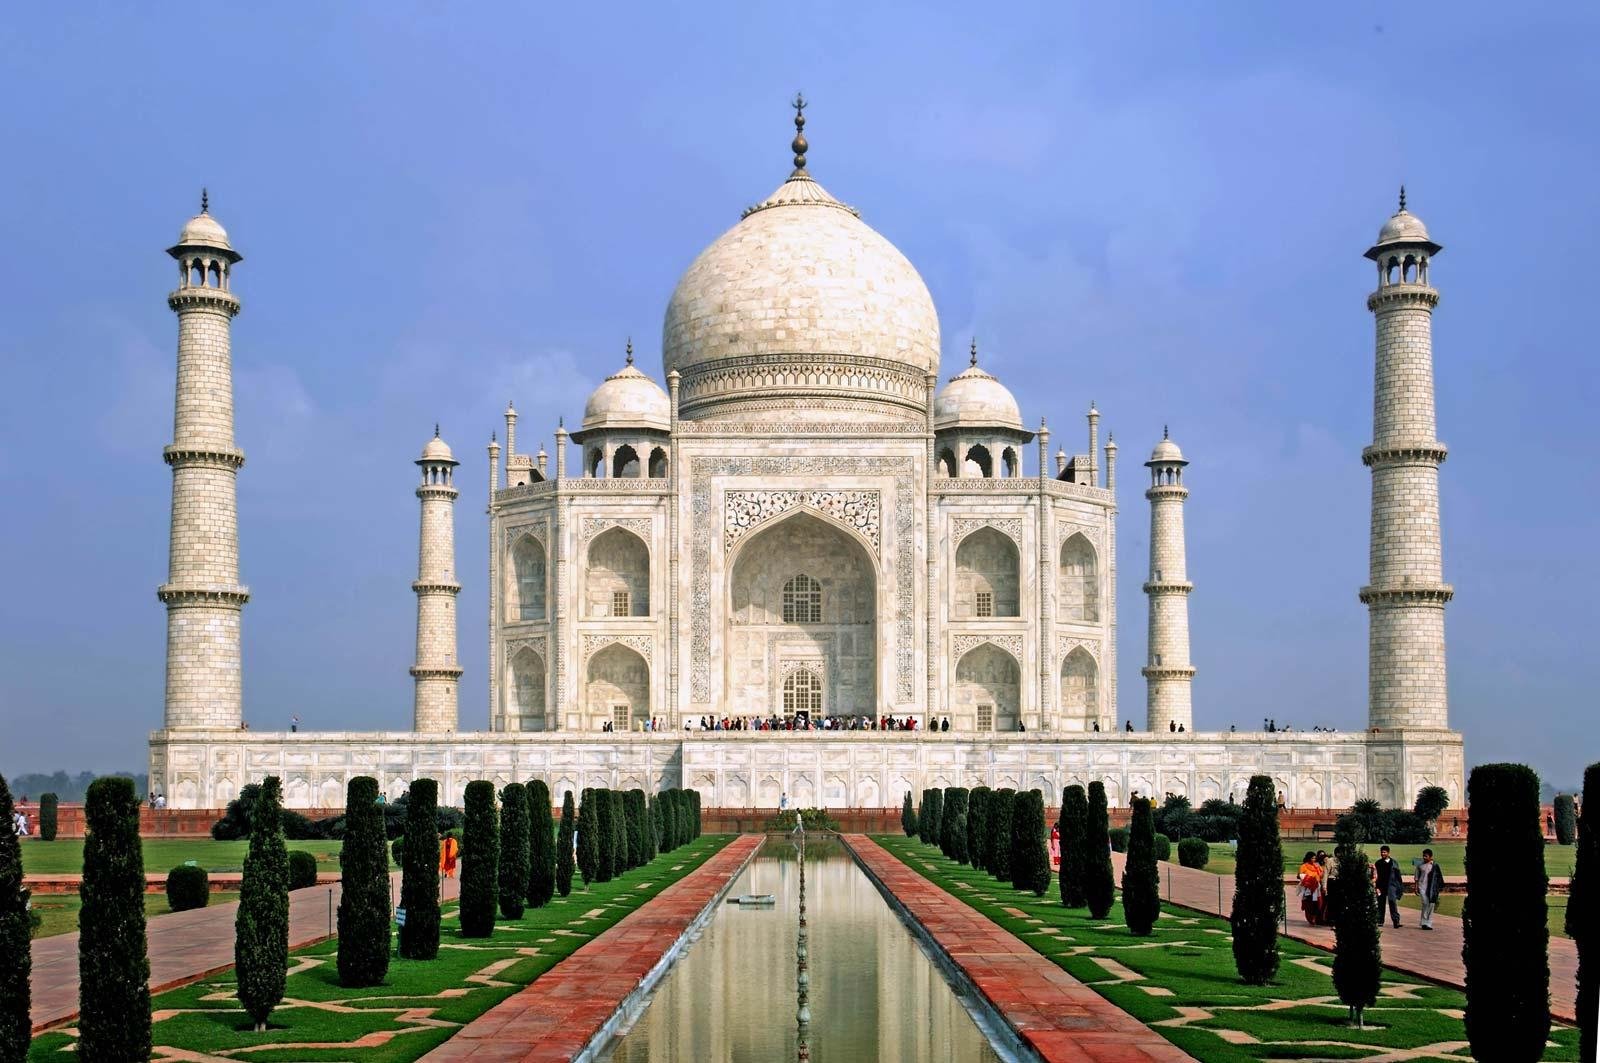 السياحة في الهند   الهند   أماكن سياحية   سياحة   وجهات   سفر   رحلات طيران